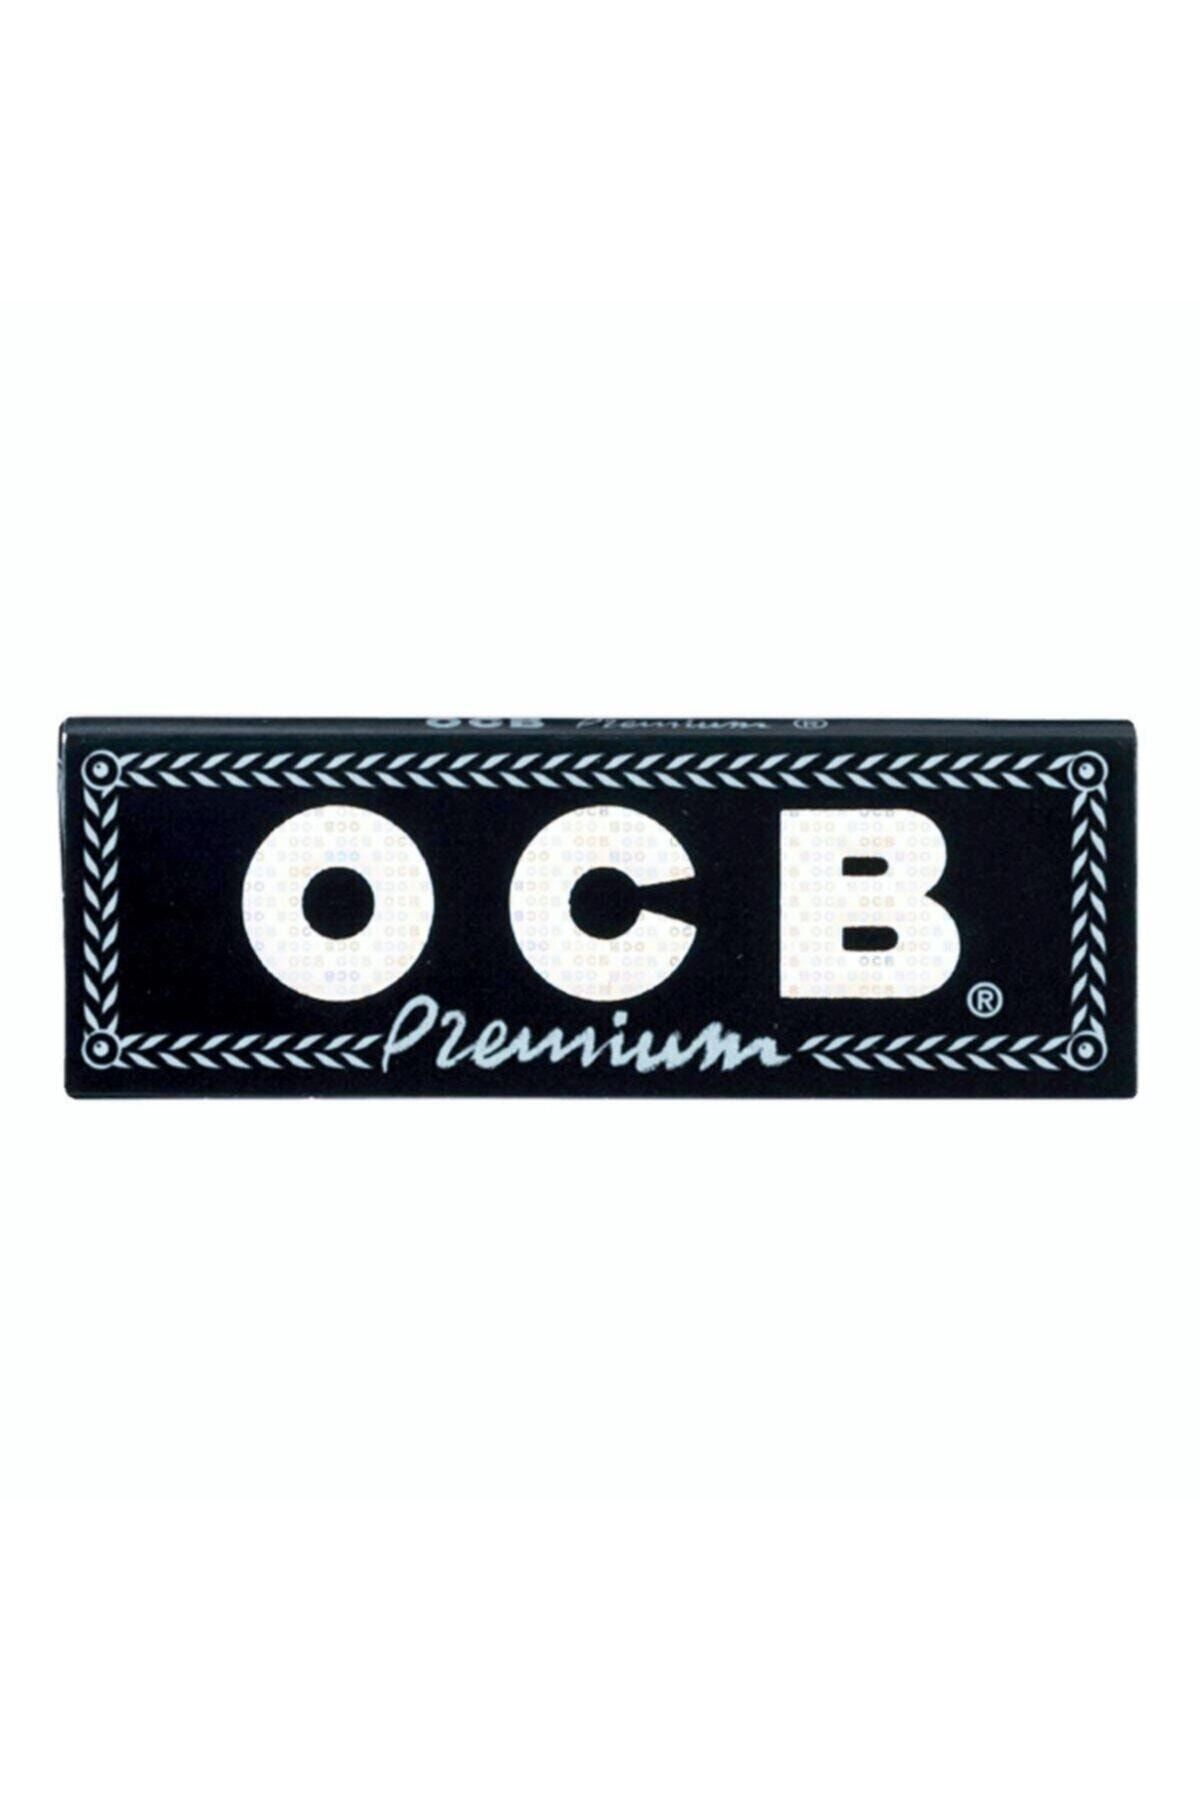 OCB Organik 50 Li Kağıt 5 Adet Fiyatı, Yorumları - Trendyol